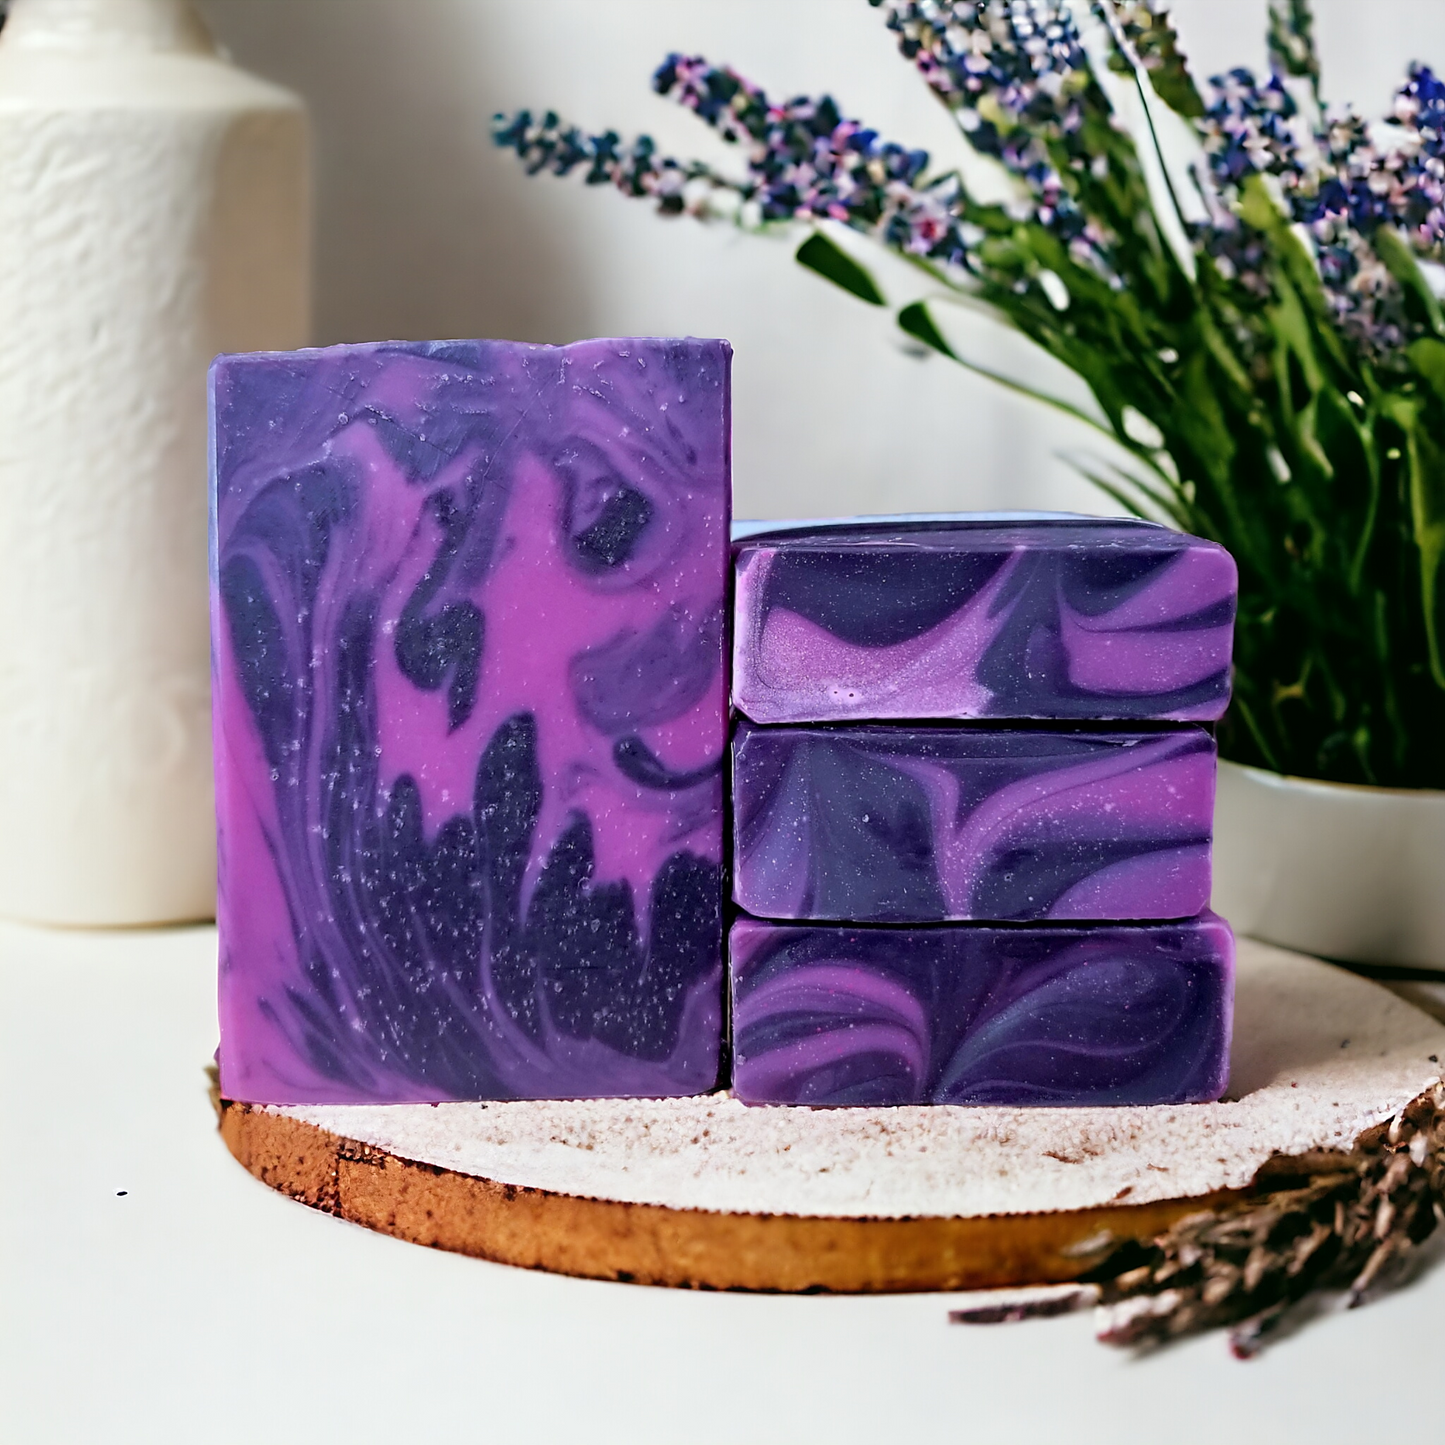 Lavender + Charcoal Soap